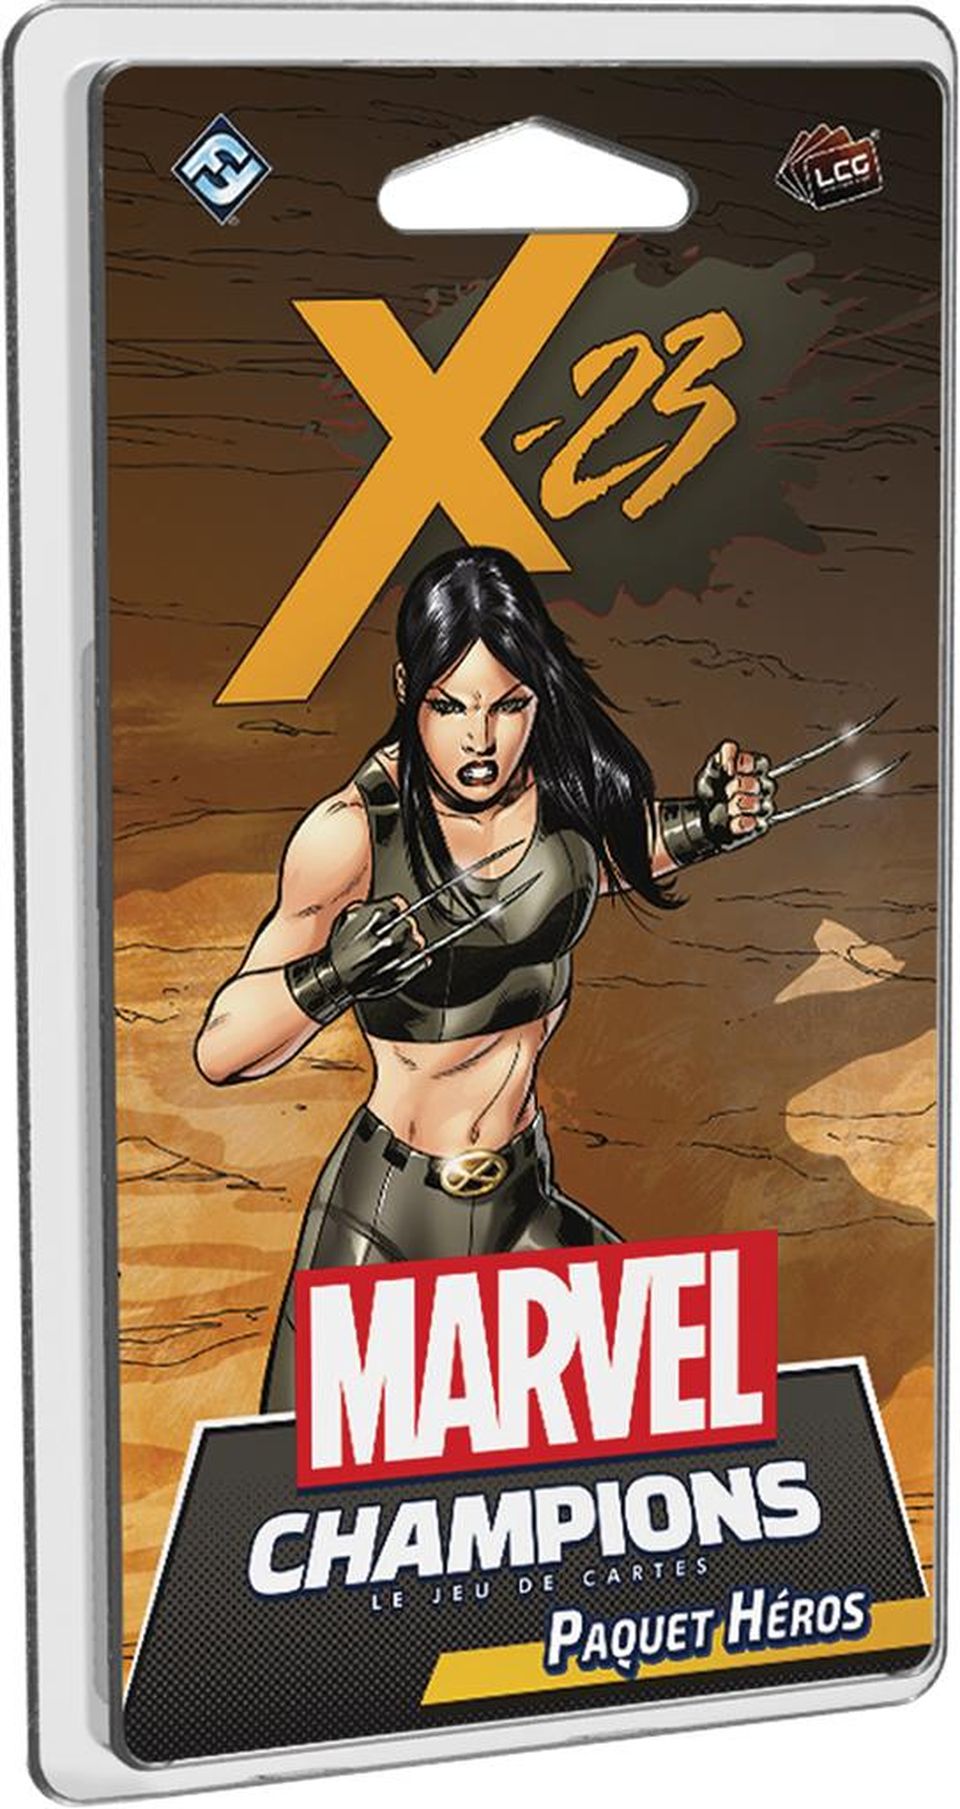 Marvel Champions : Le jeu de cartes - X-23 (Paquet Héros) image